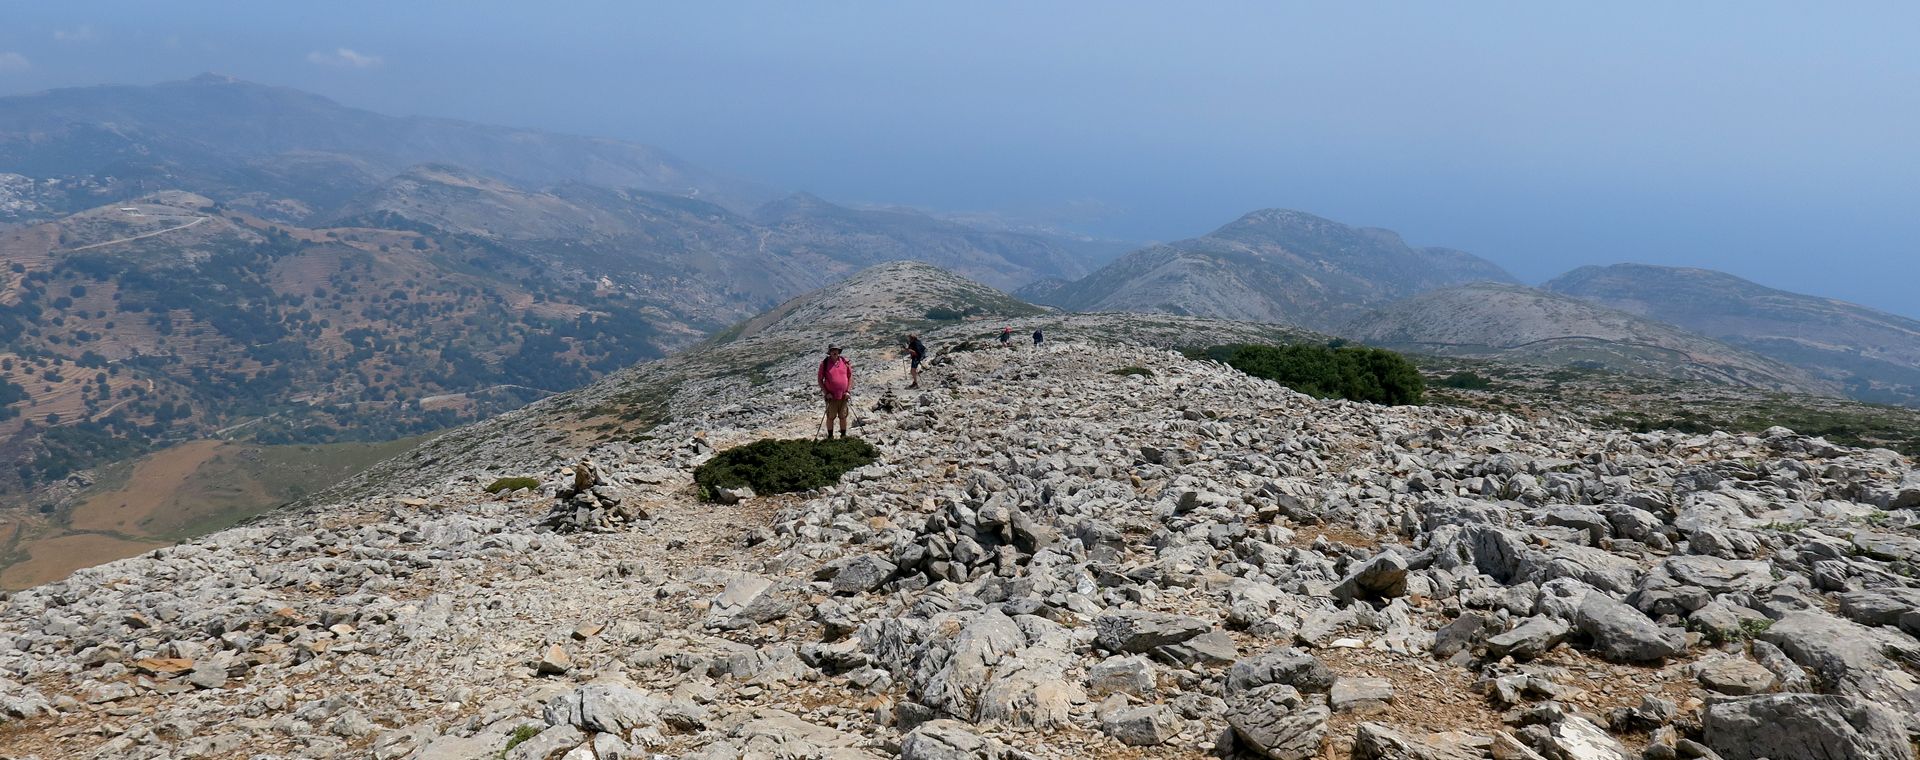 Naxos : Hiking to mount Zas